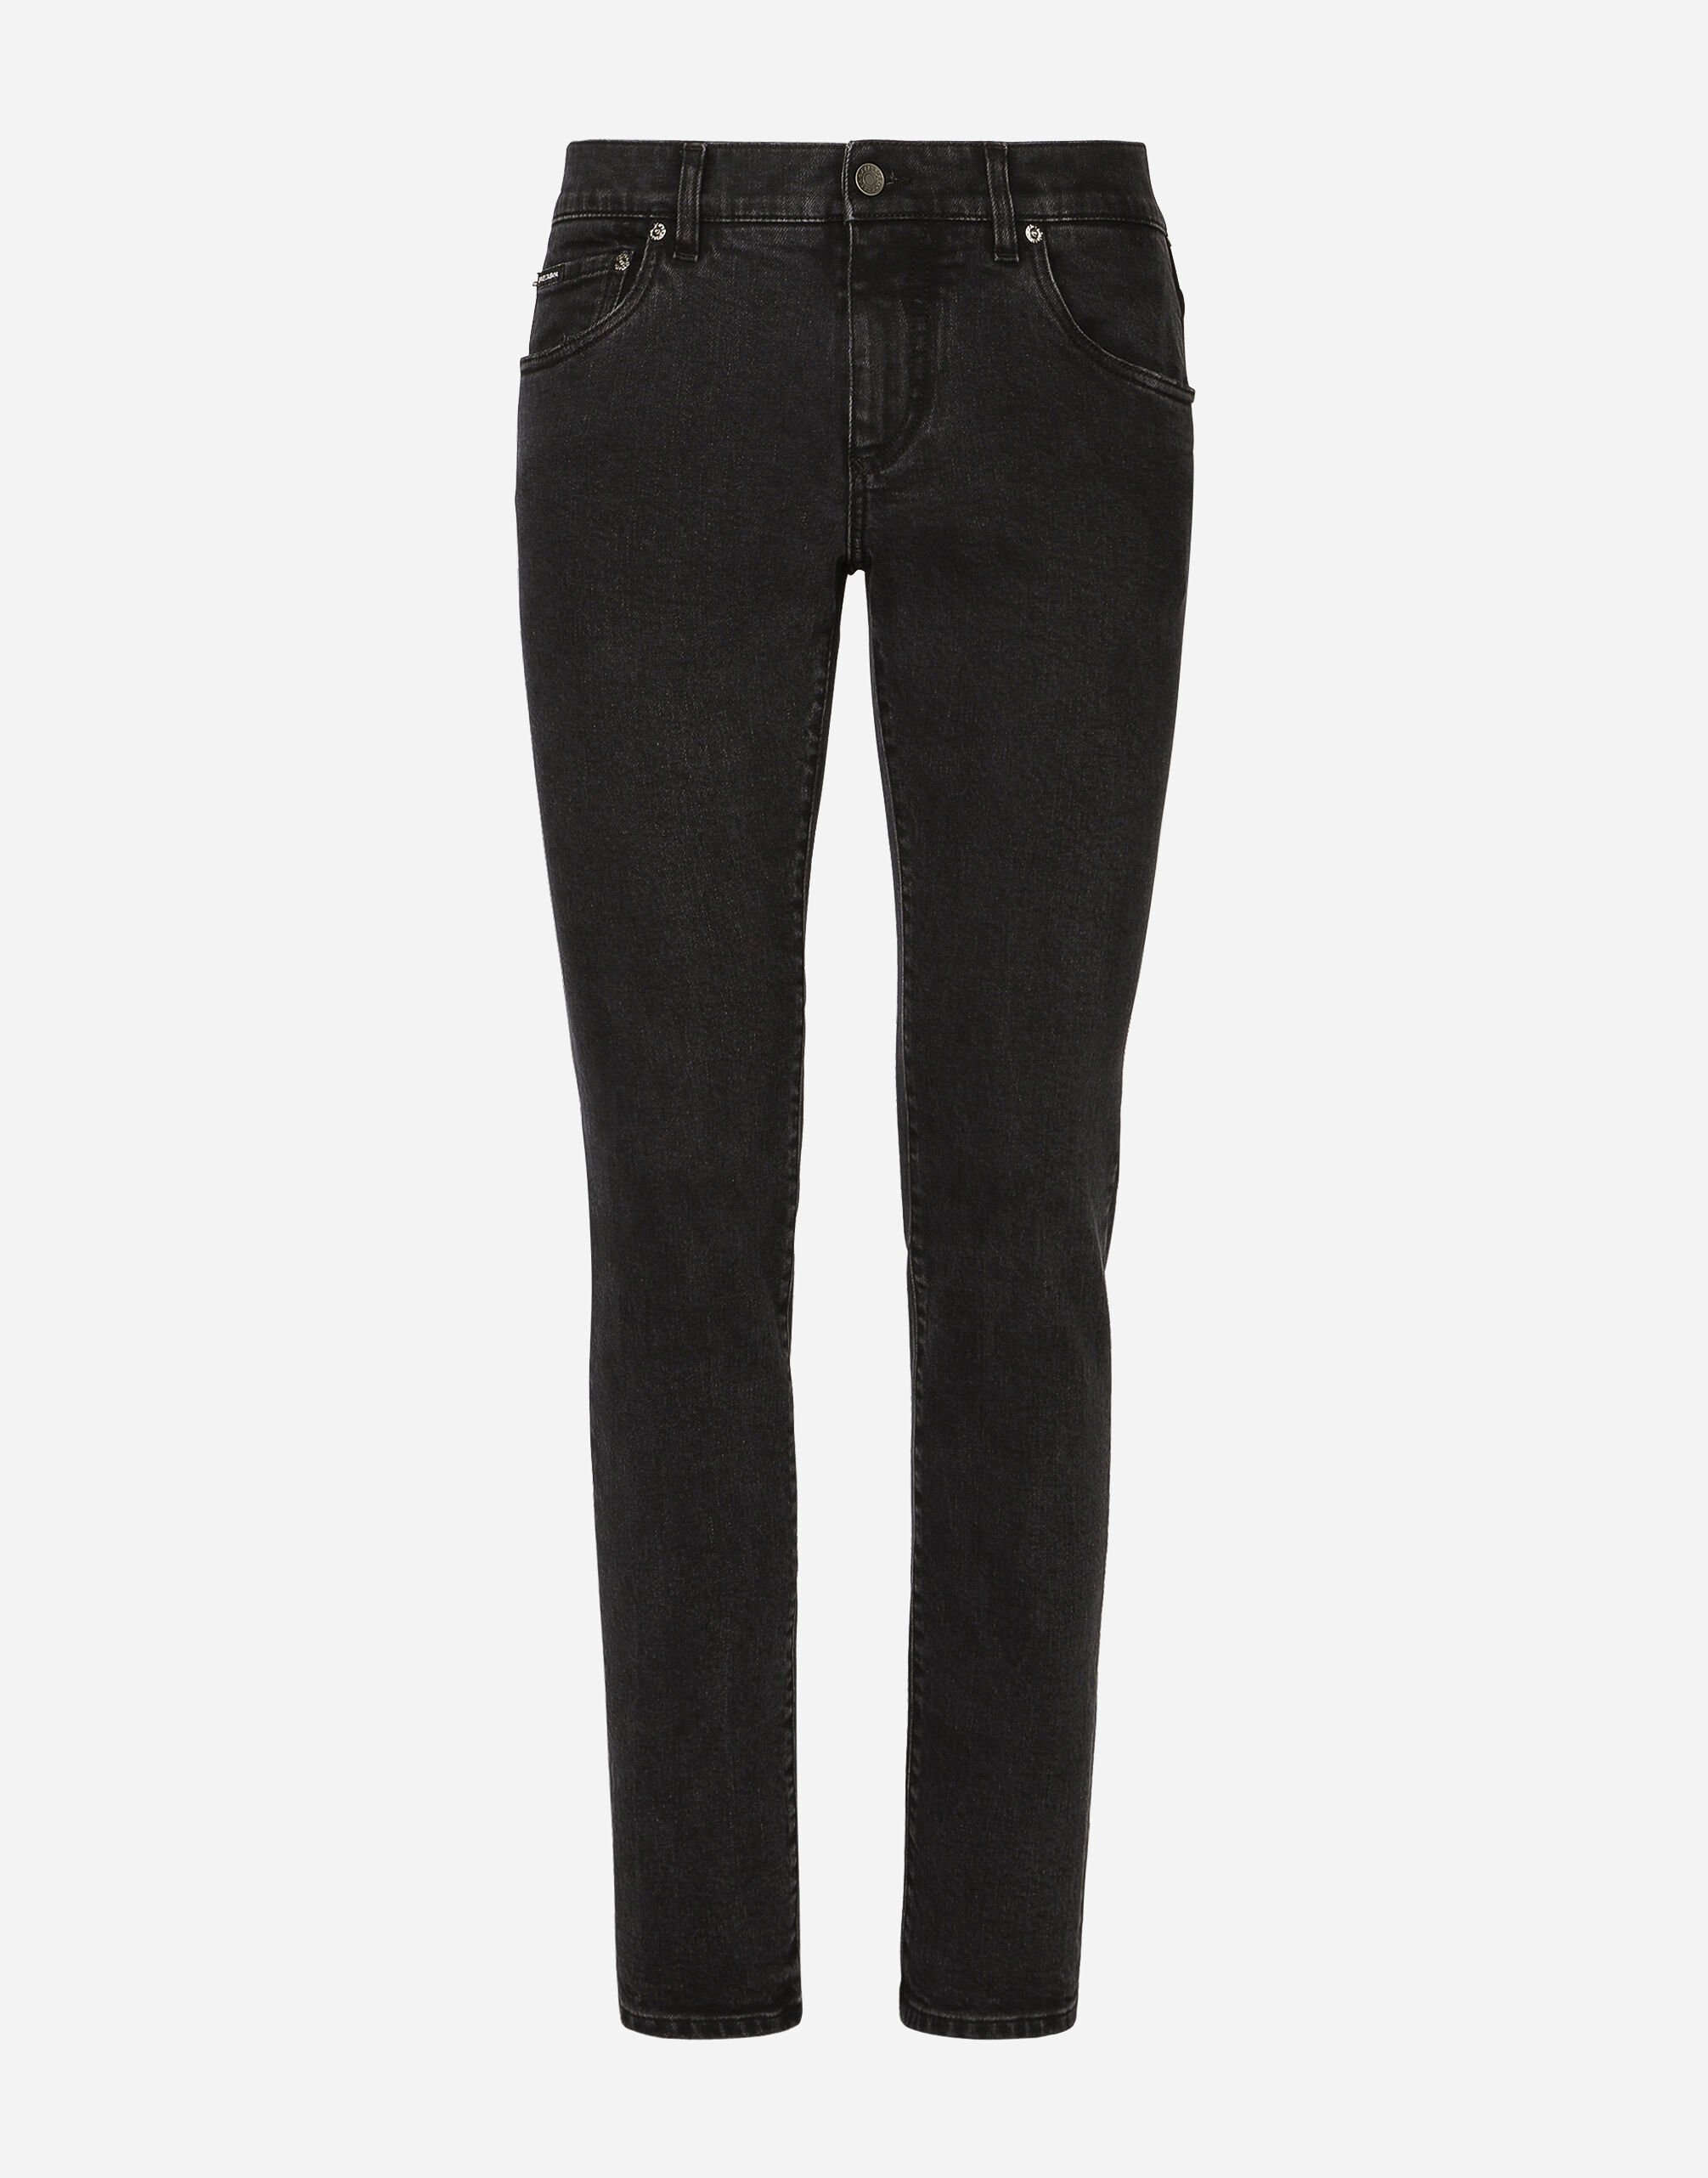 Dolce & Gabbana Jeans Skinny Stretchdenim gewaschen Mehrfarbig G9NL5DG8GW9